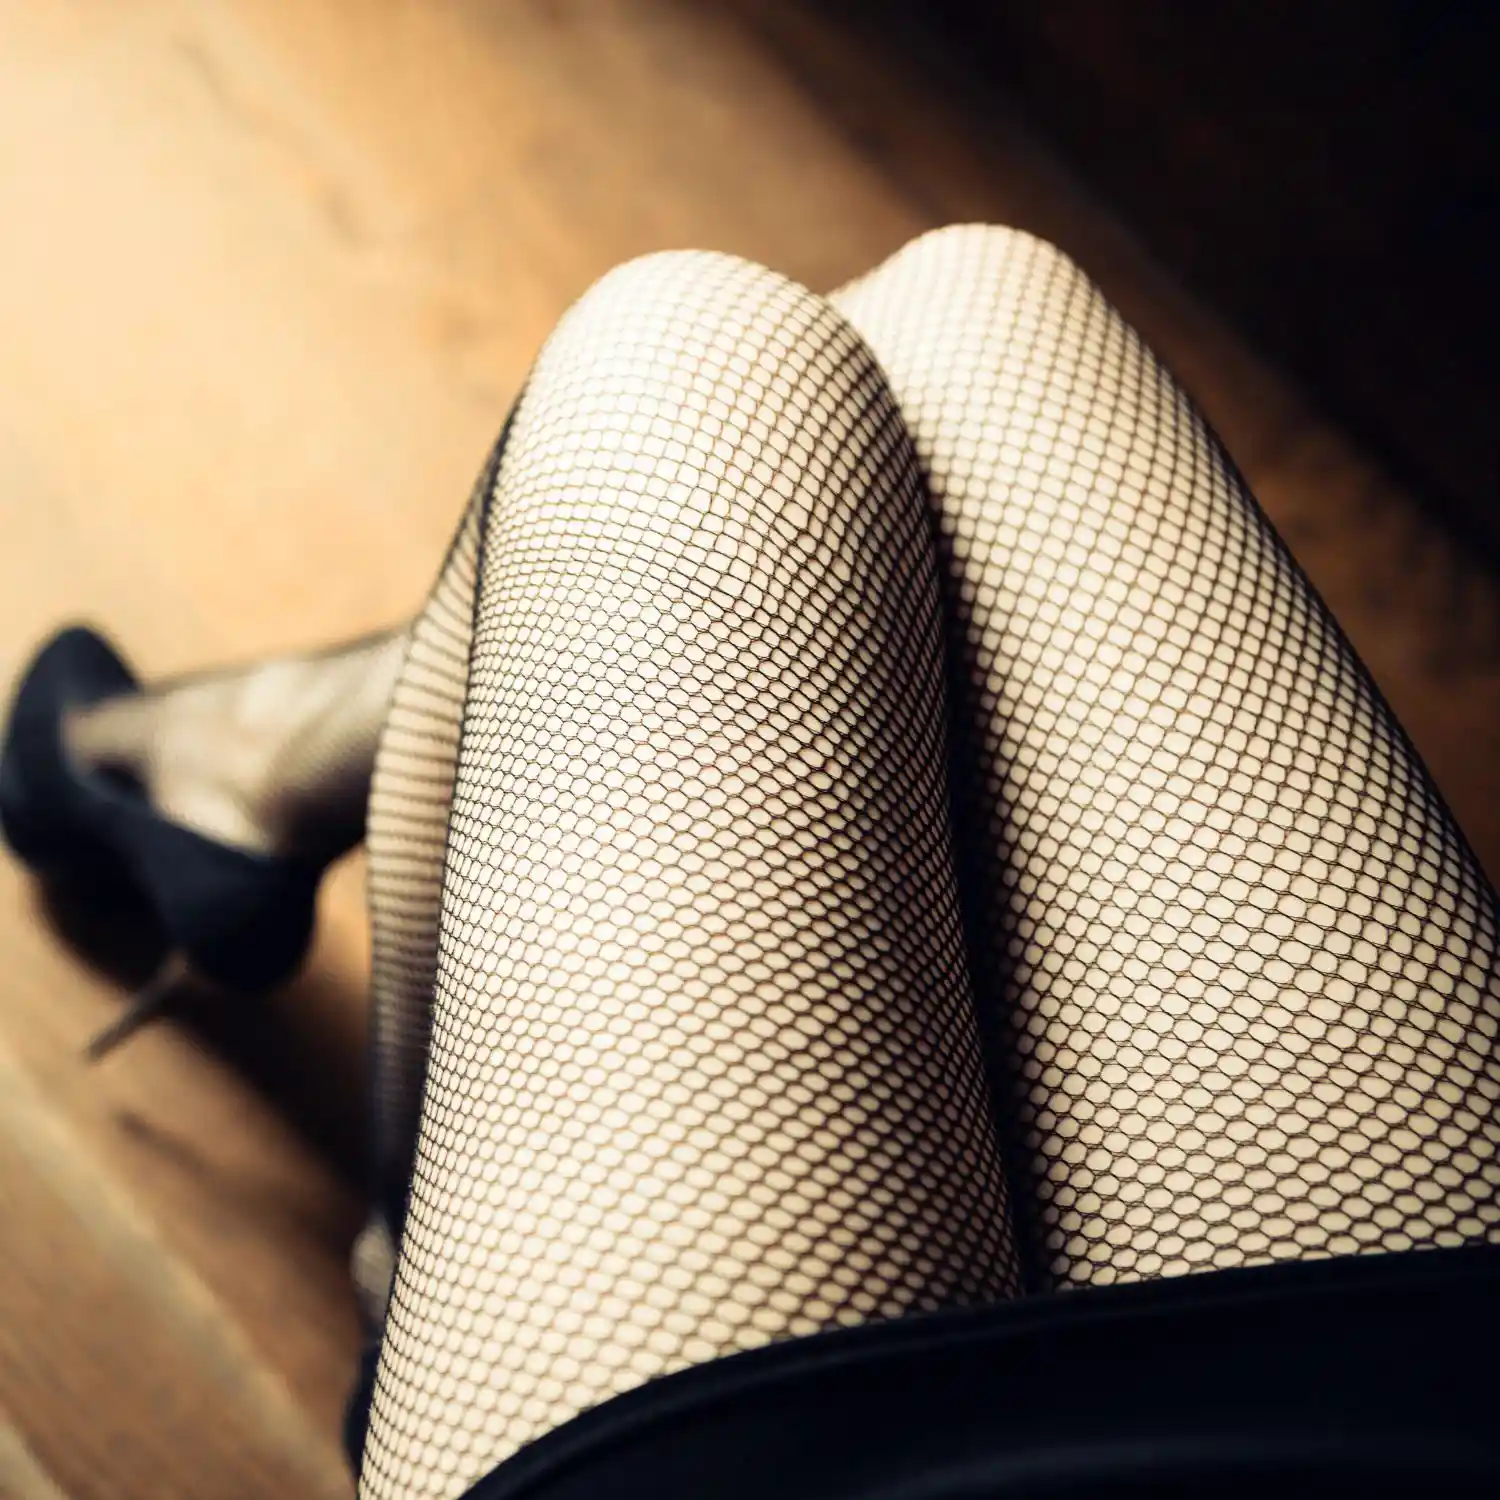 Fishnet stockings on girls legs